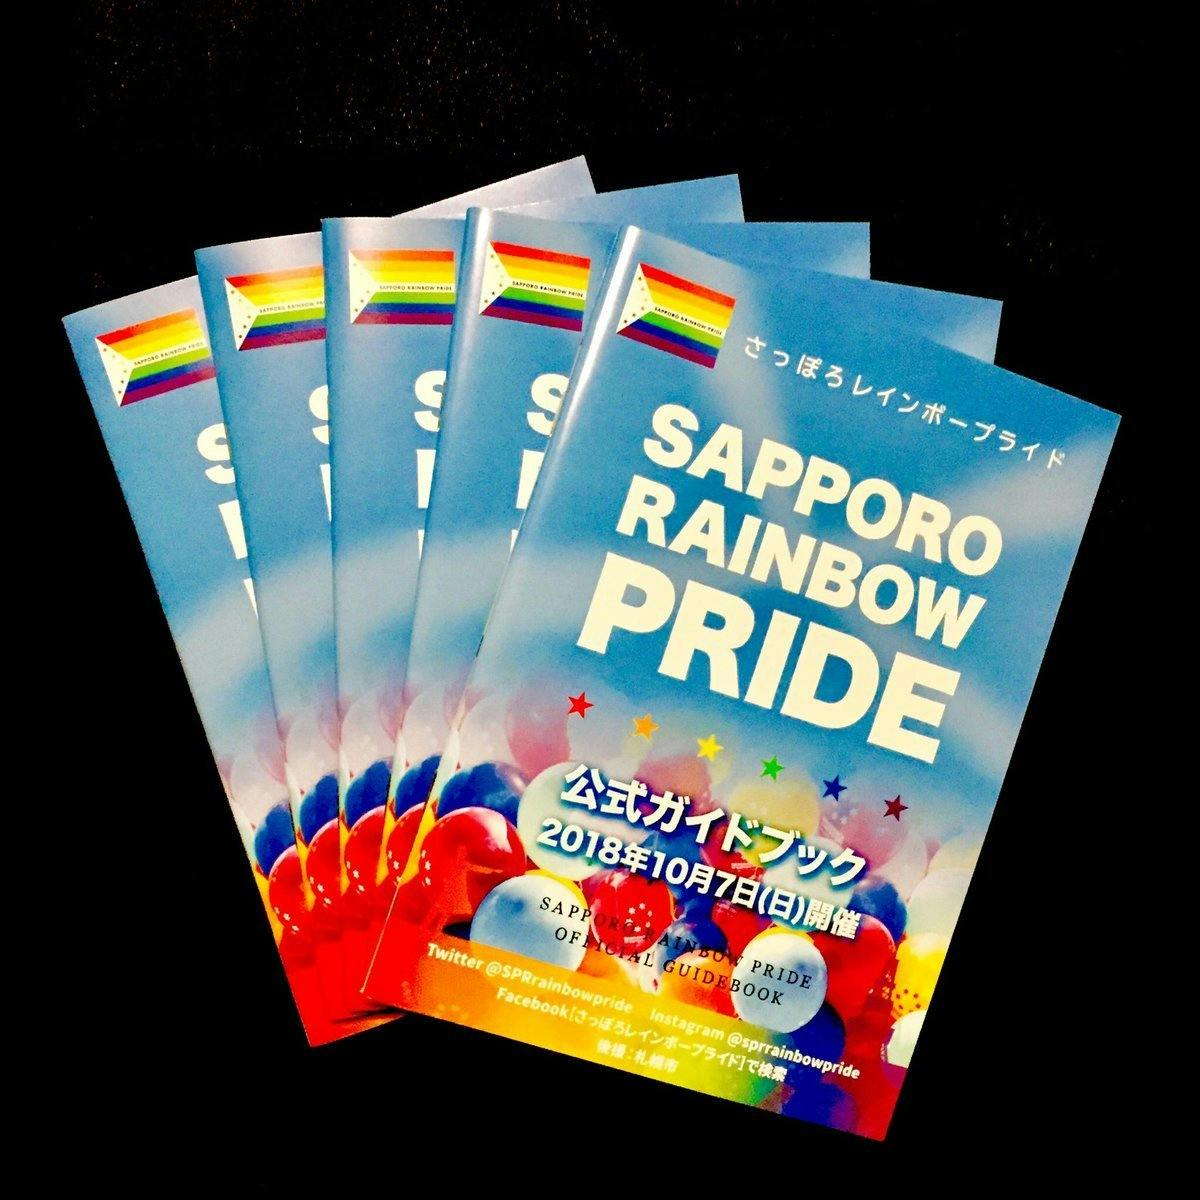 札幌の街を虹色に さっぽろレインボープライド 19の開催を実現したい Campfire キャンプファイヤー